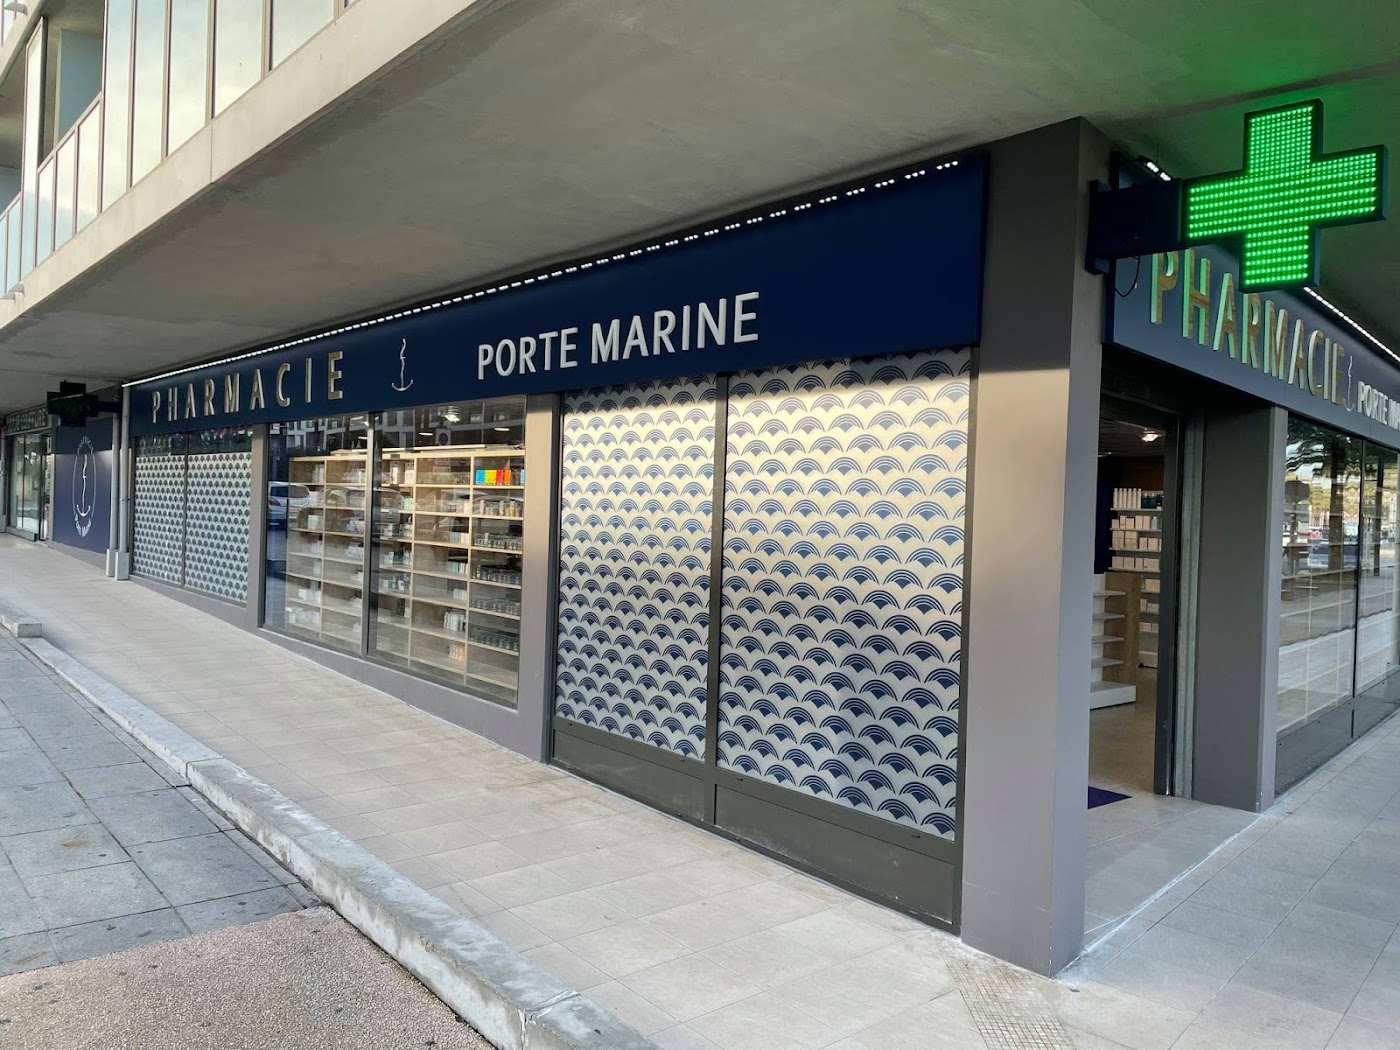 Pharmacie Porte Marine